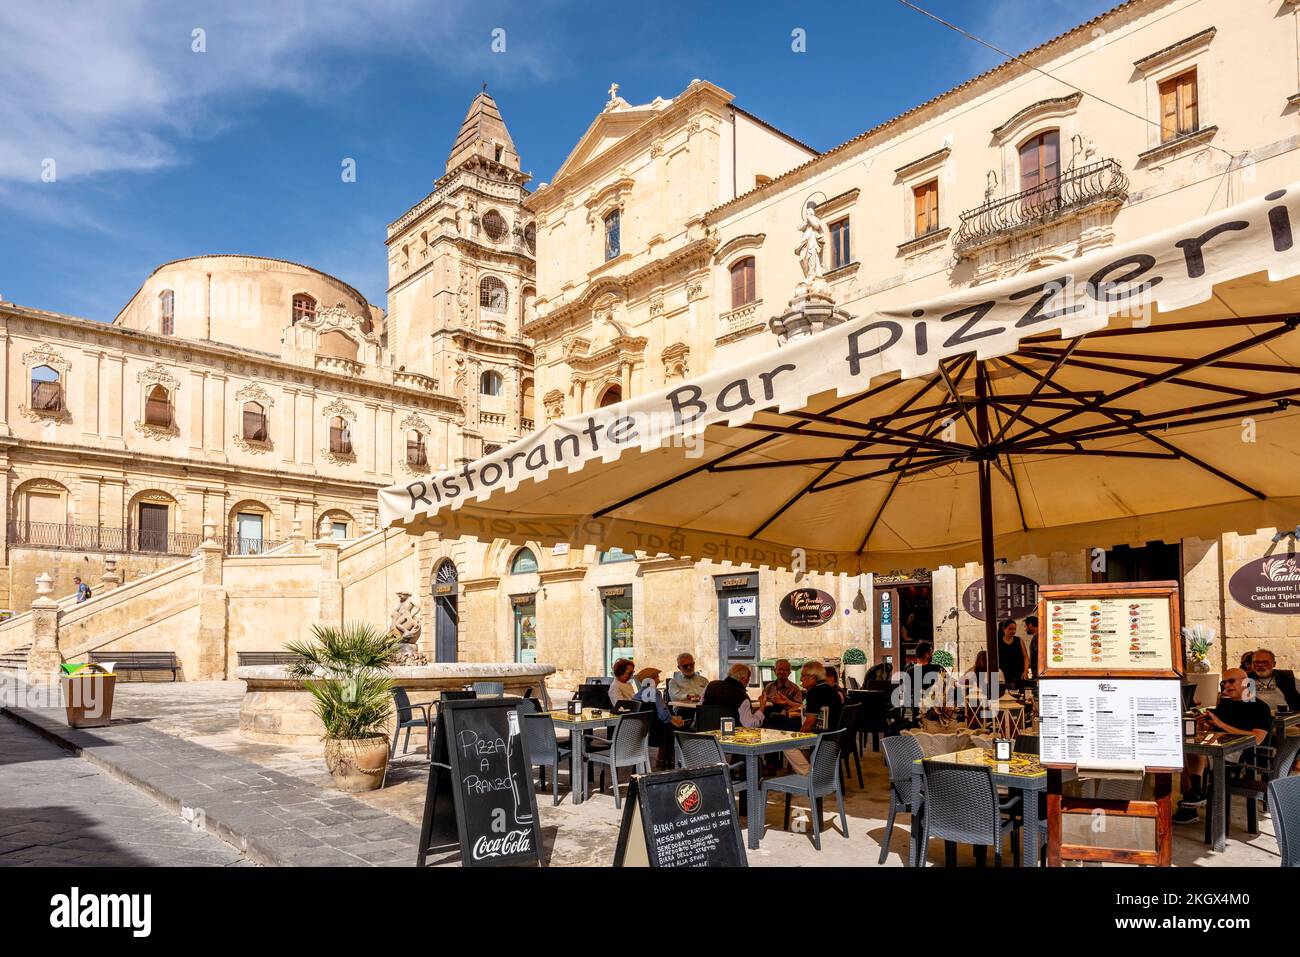 Cafe/Restaurant, Noto, Sicily, Italy. Stock Photo